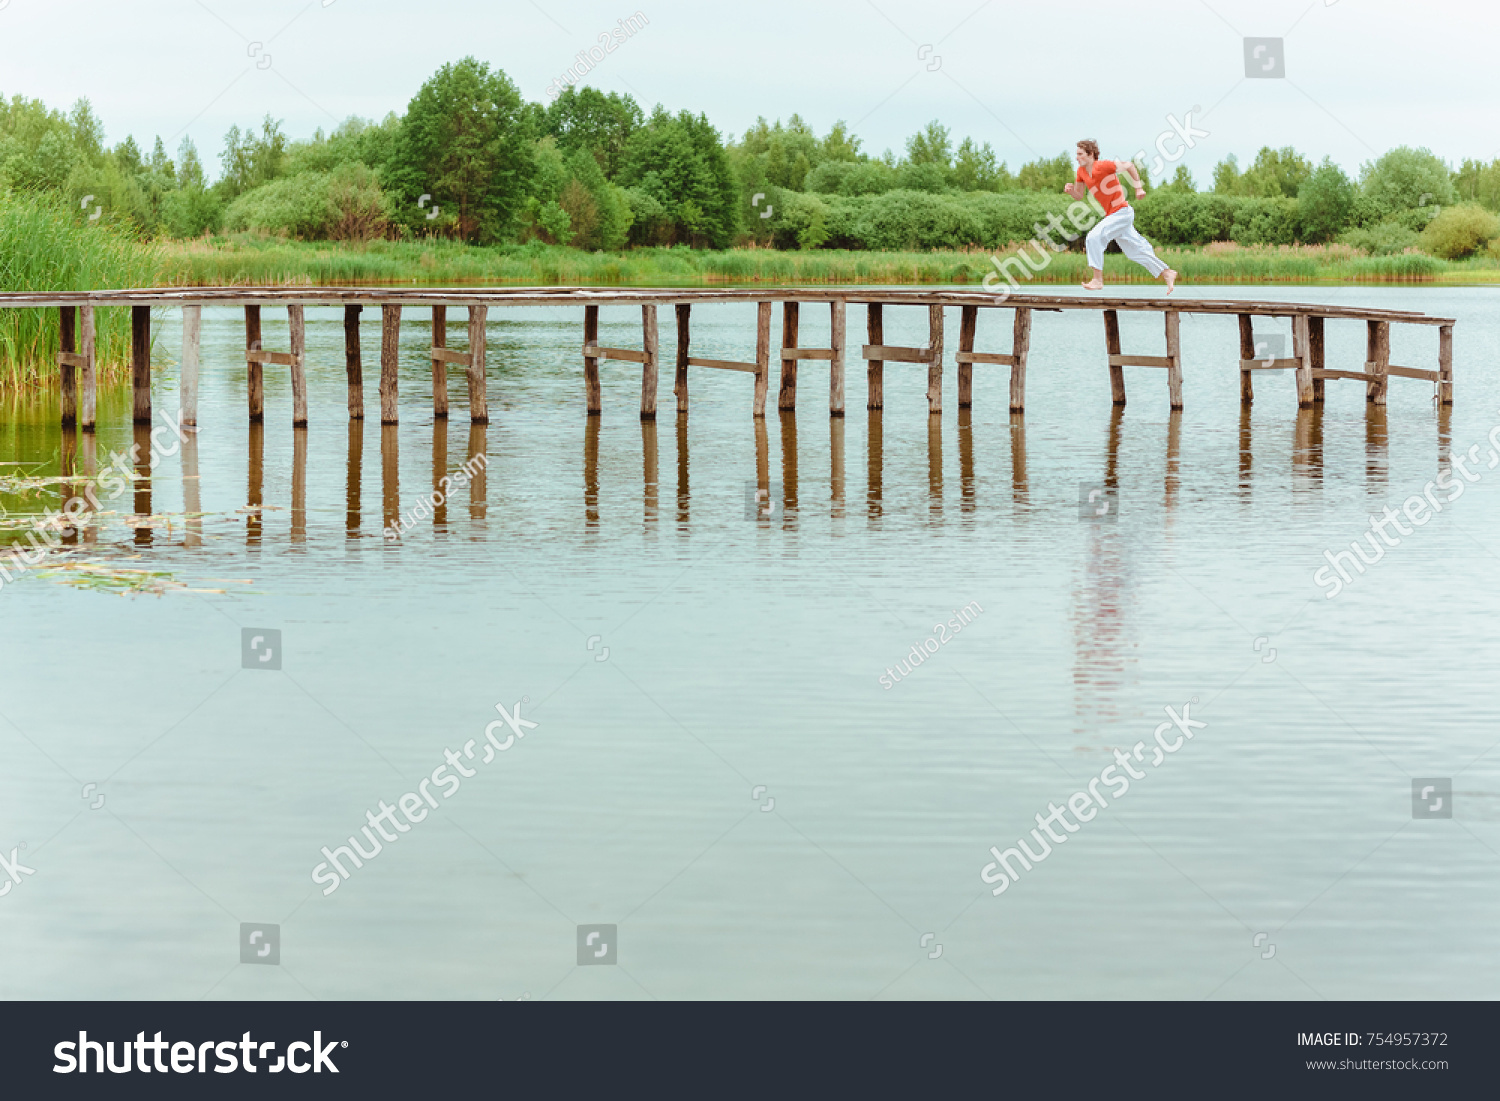 Man running on wooden pier at lake #754957372